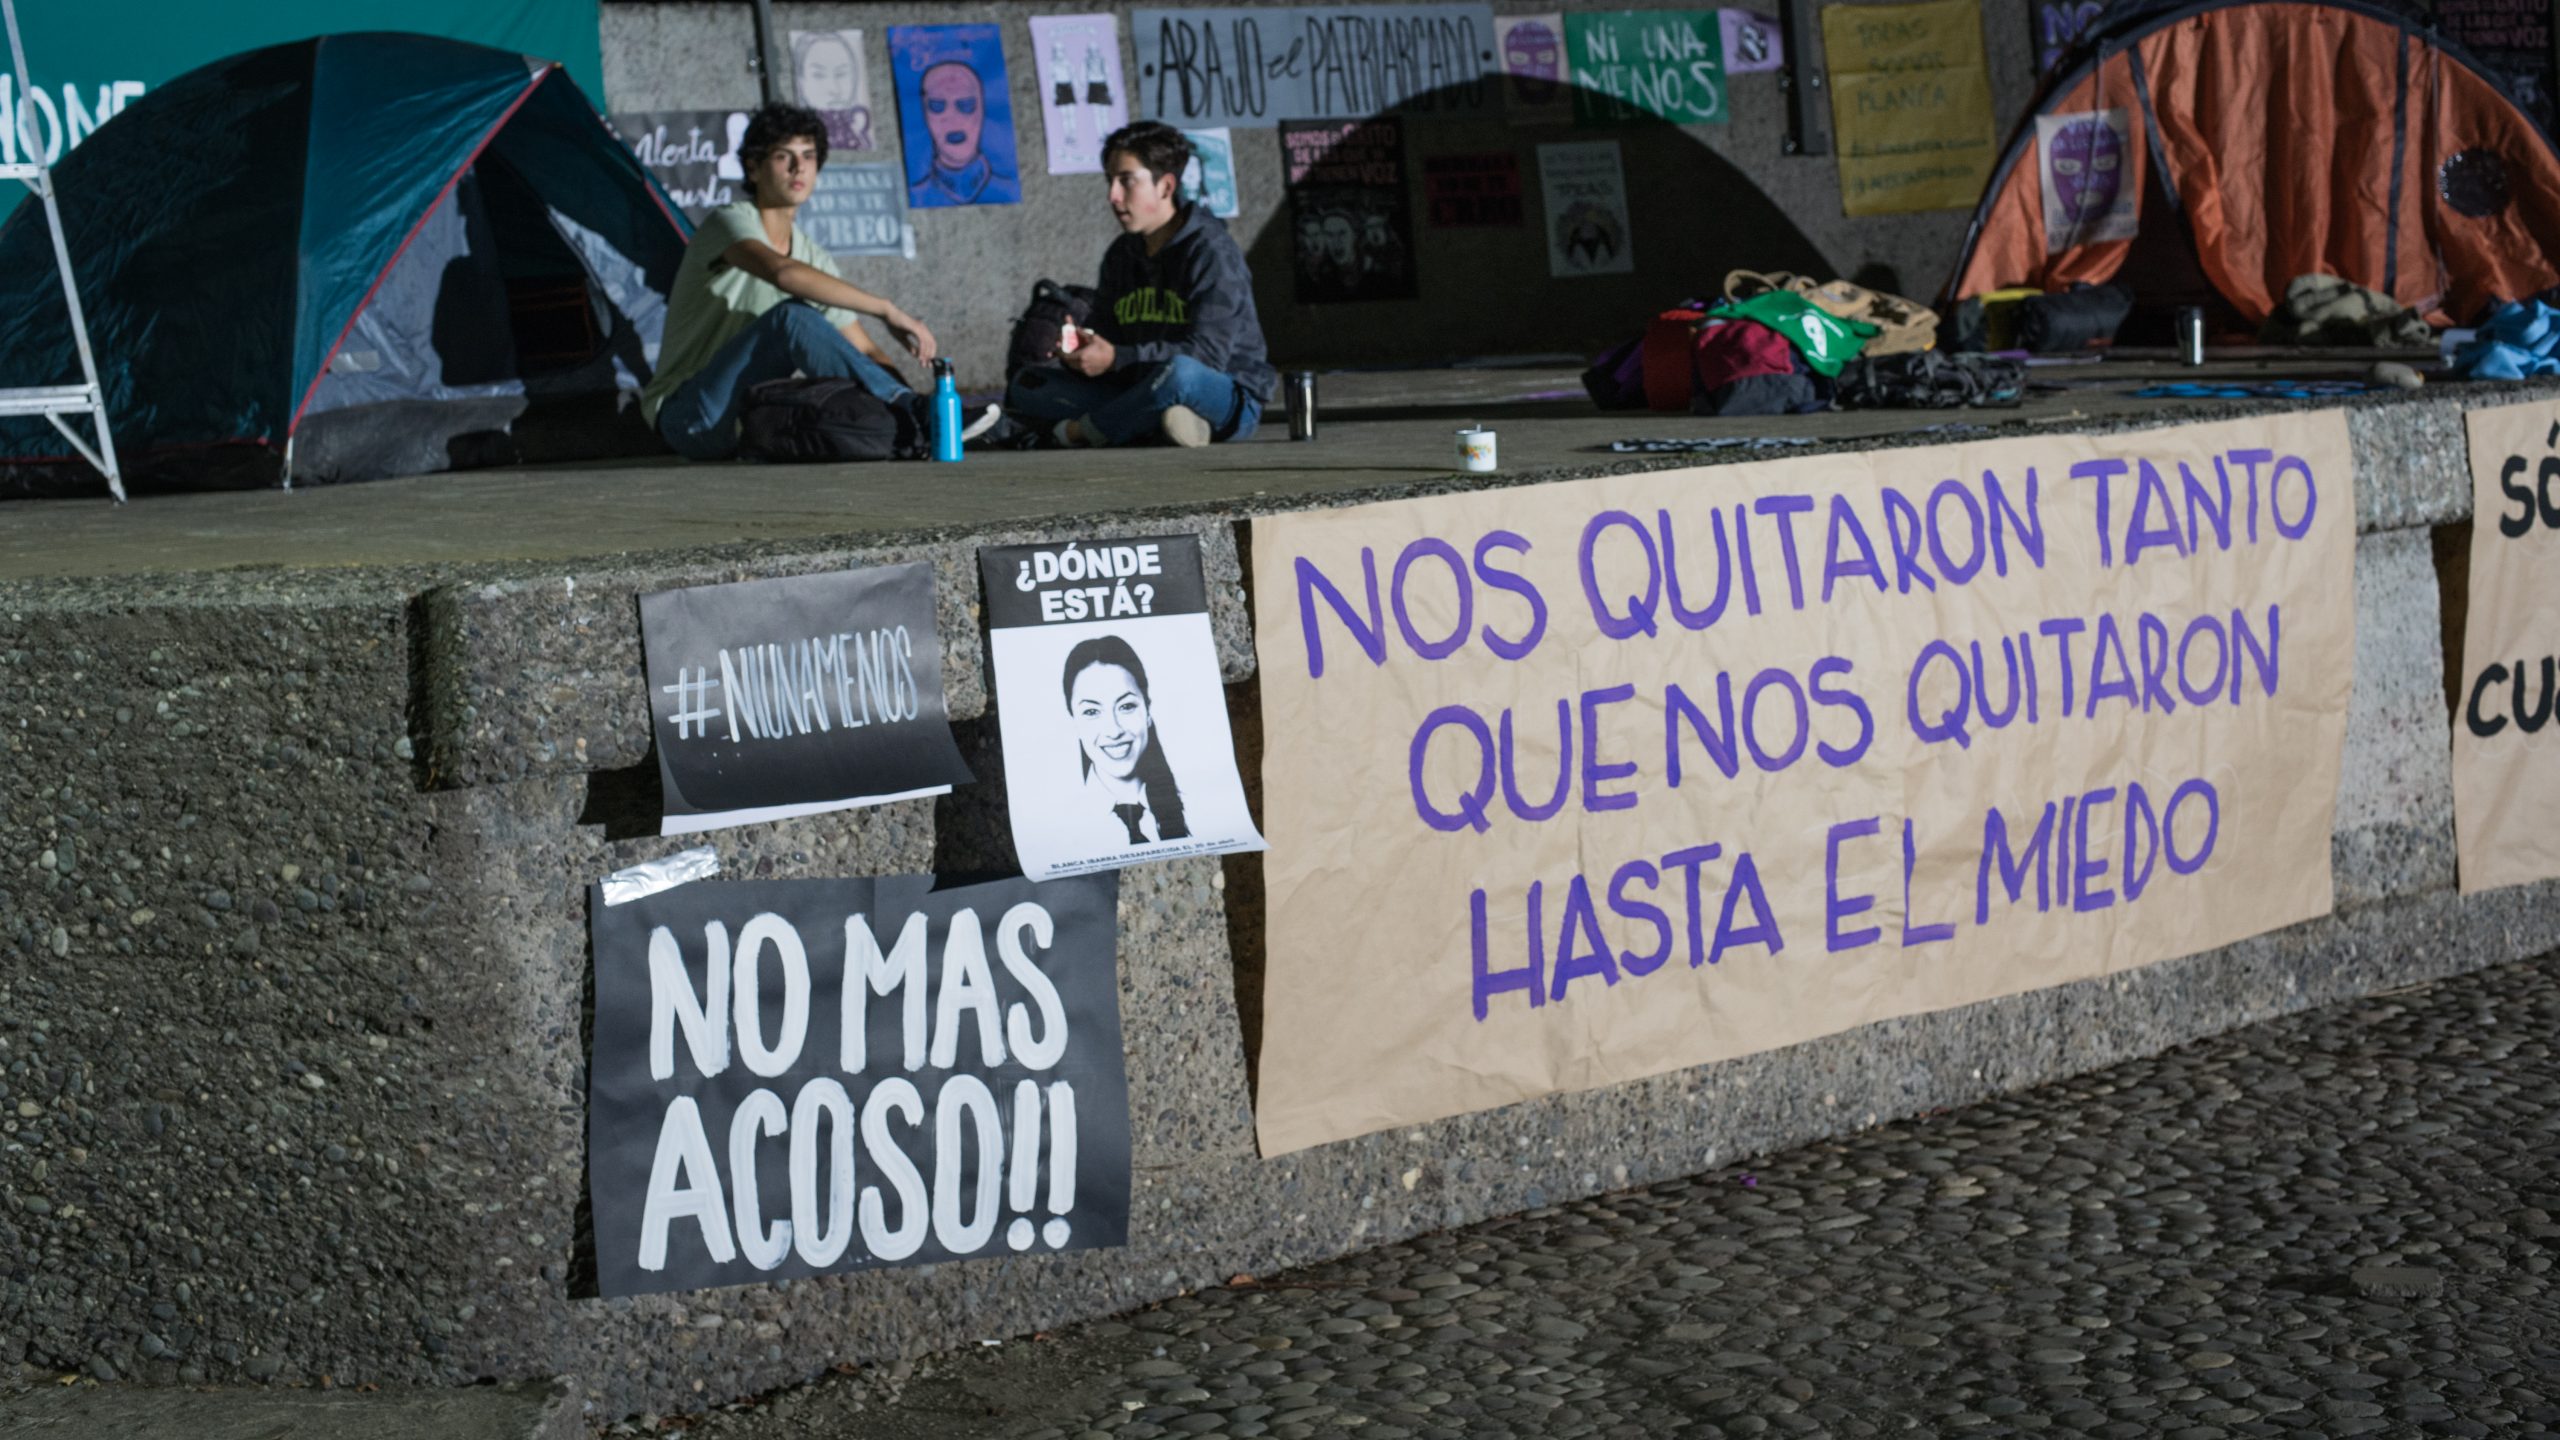 Imagen de 'La Jauría' de una toma de protesta.